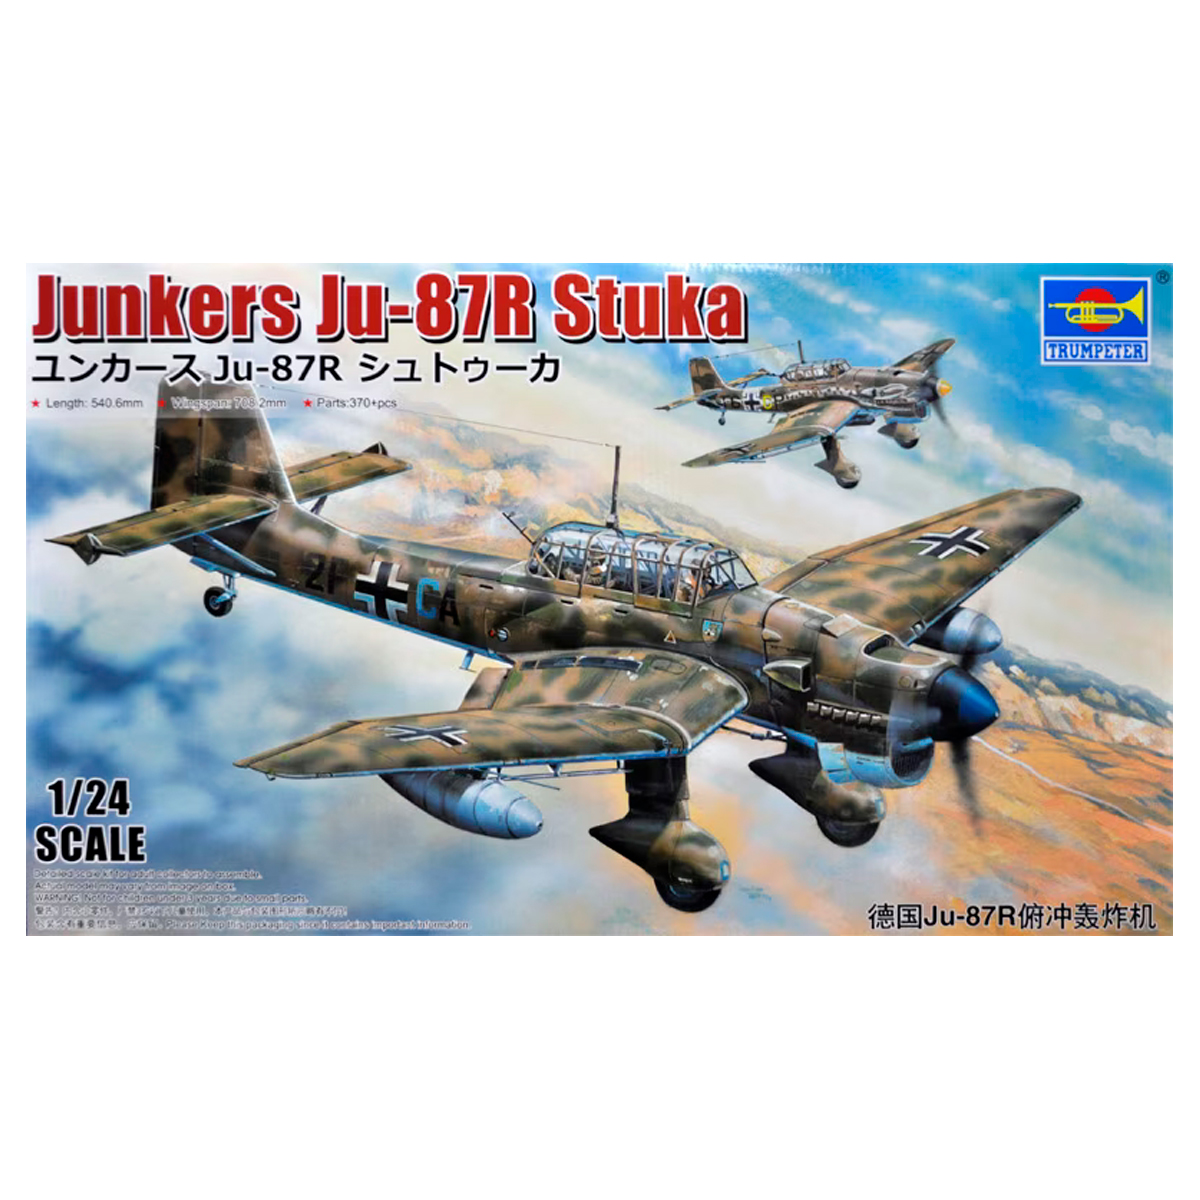 Ju-87R Stuka 1/24